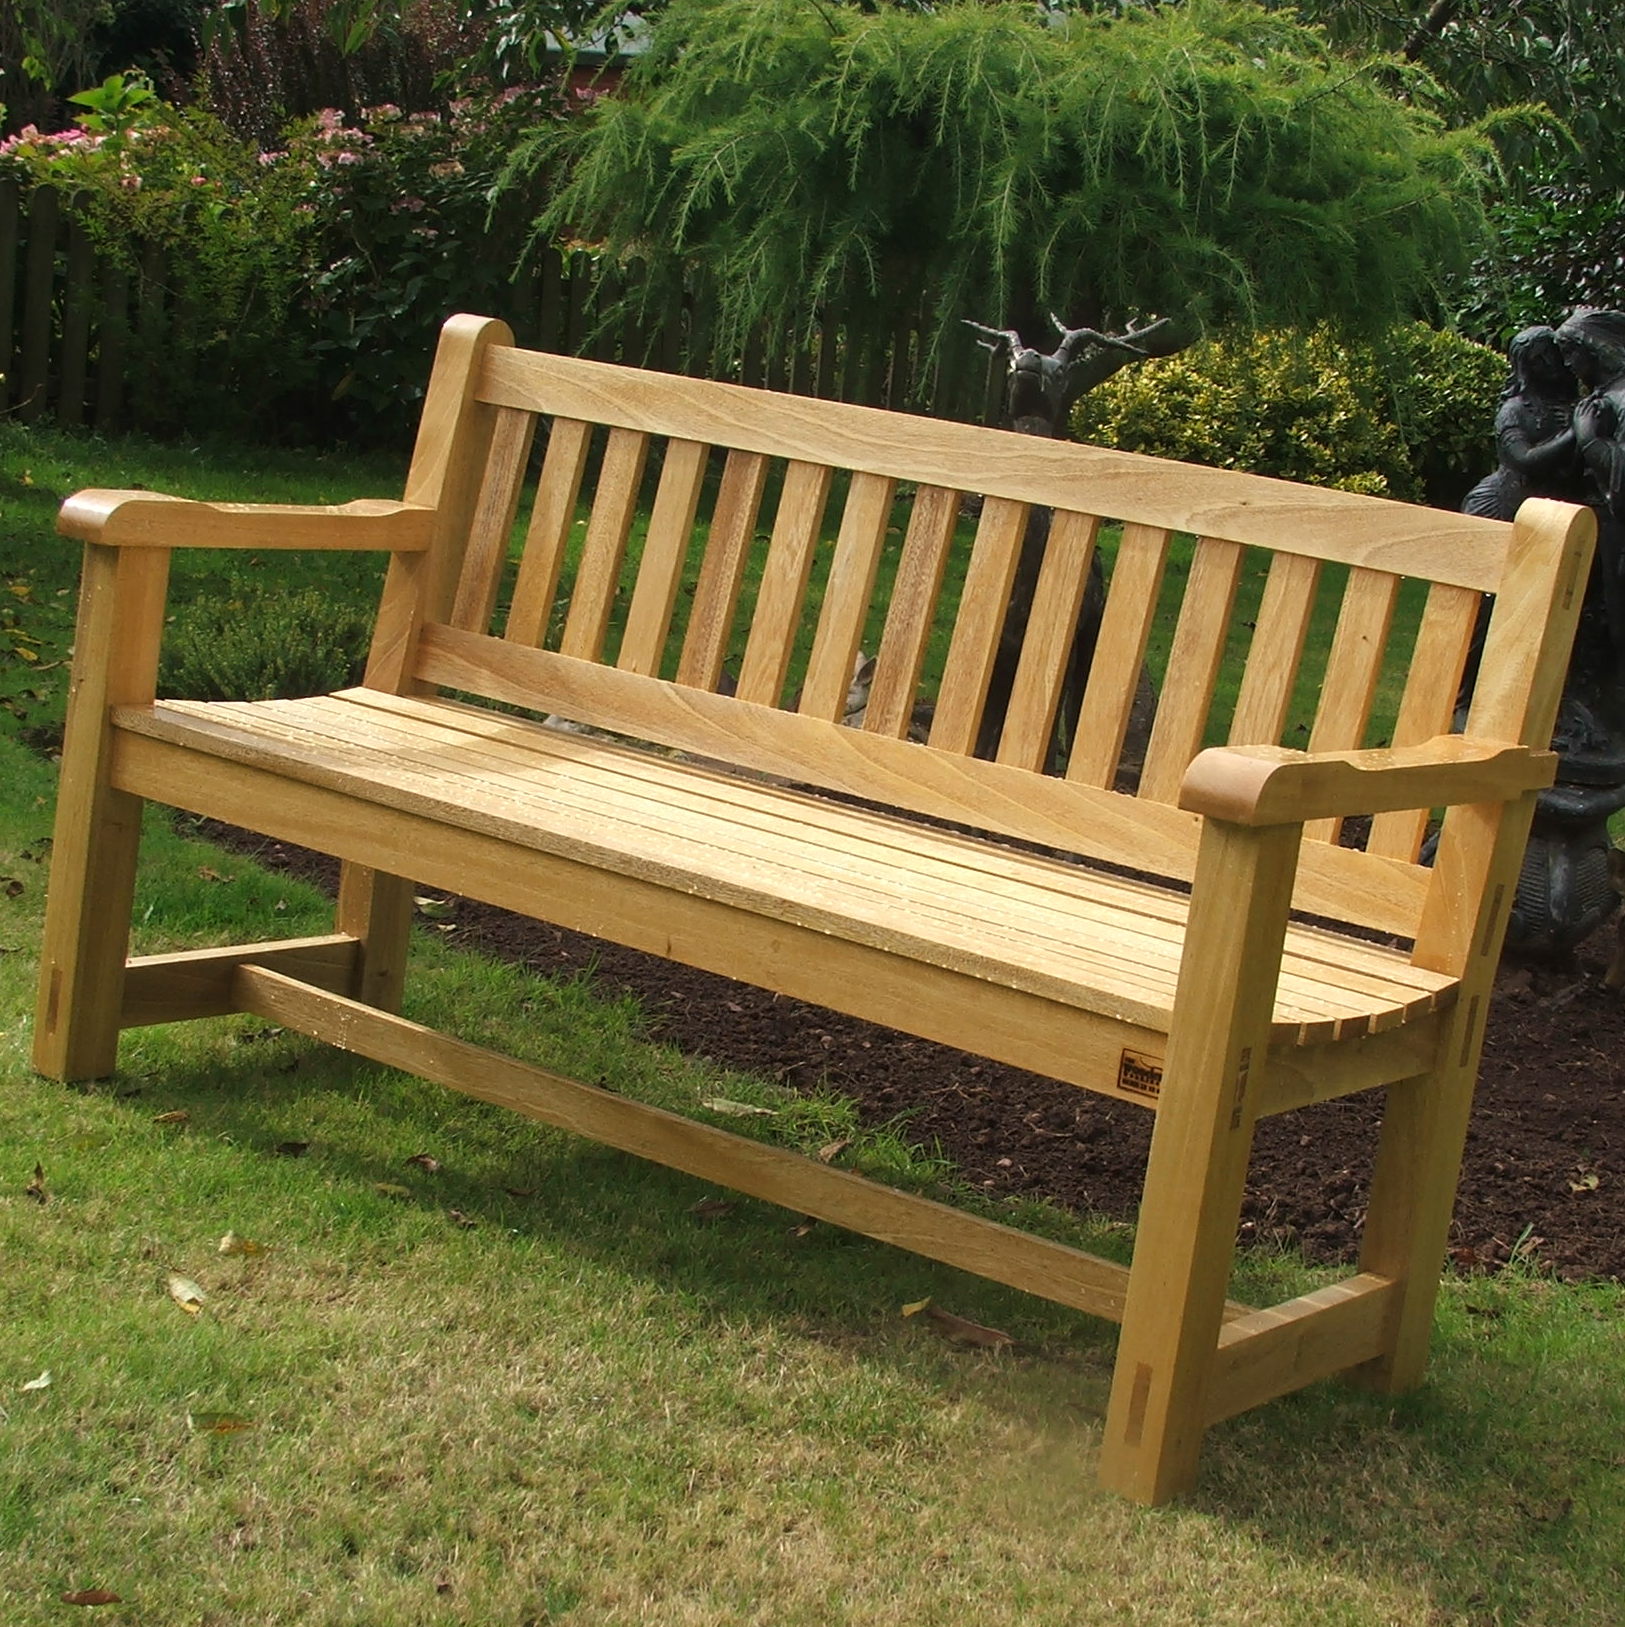  garden furniture hardwood